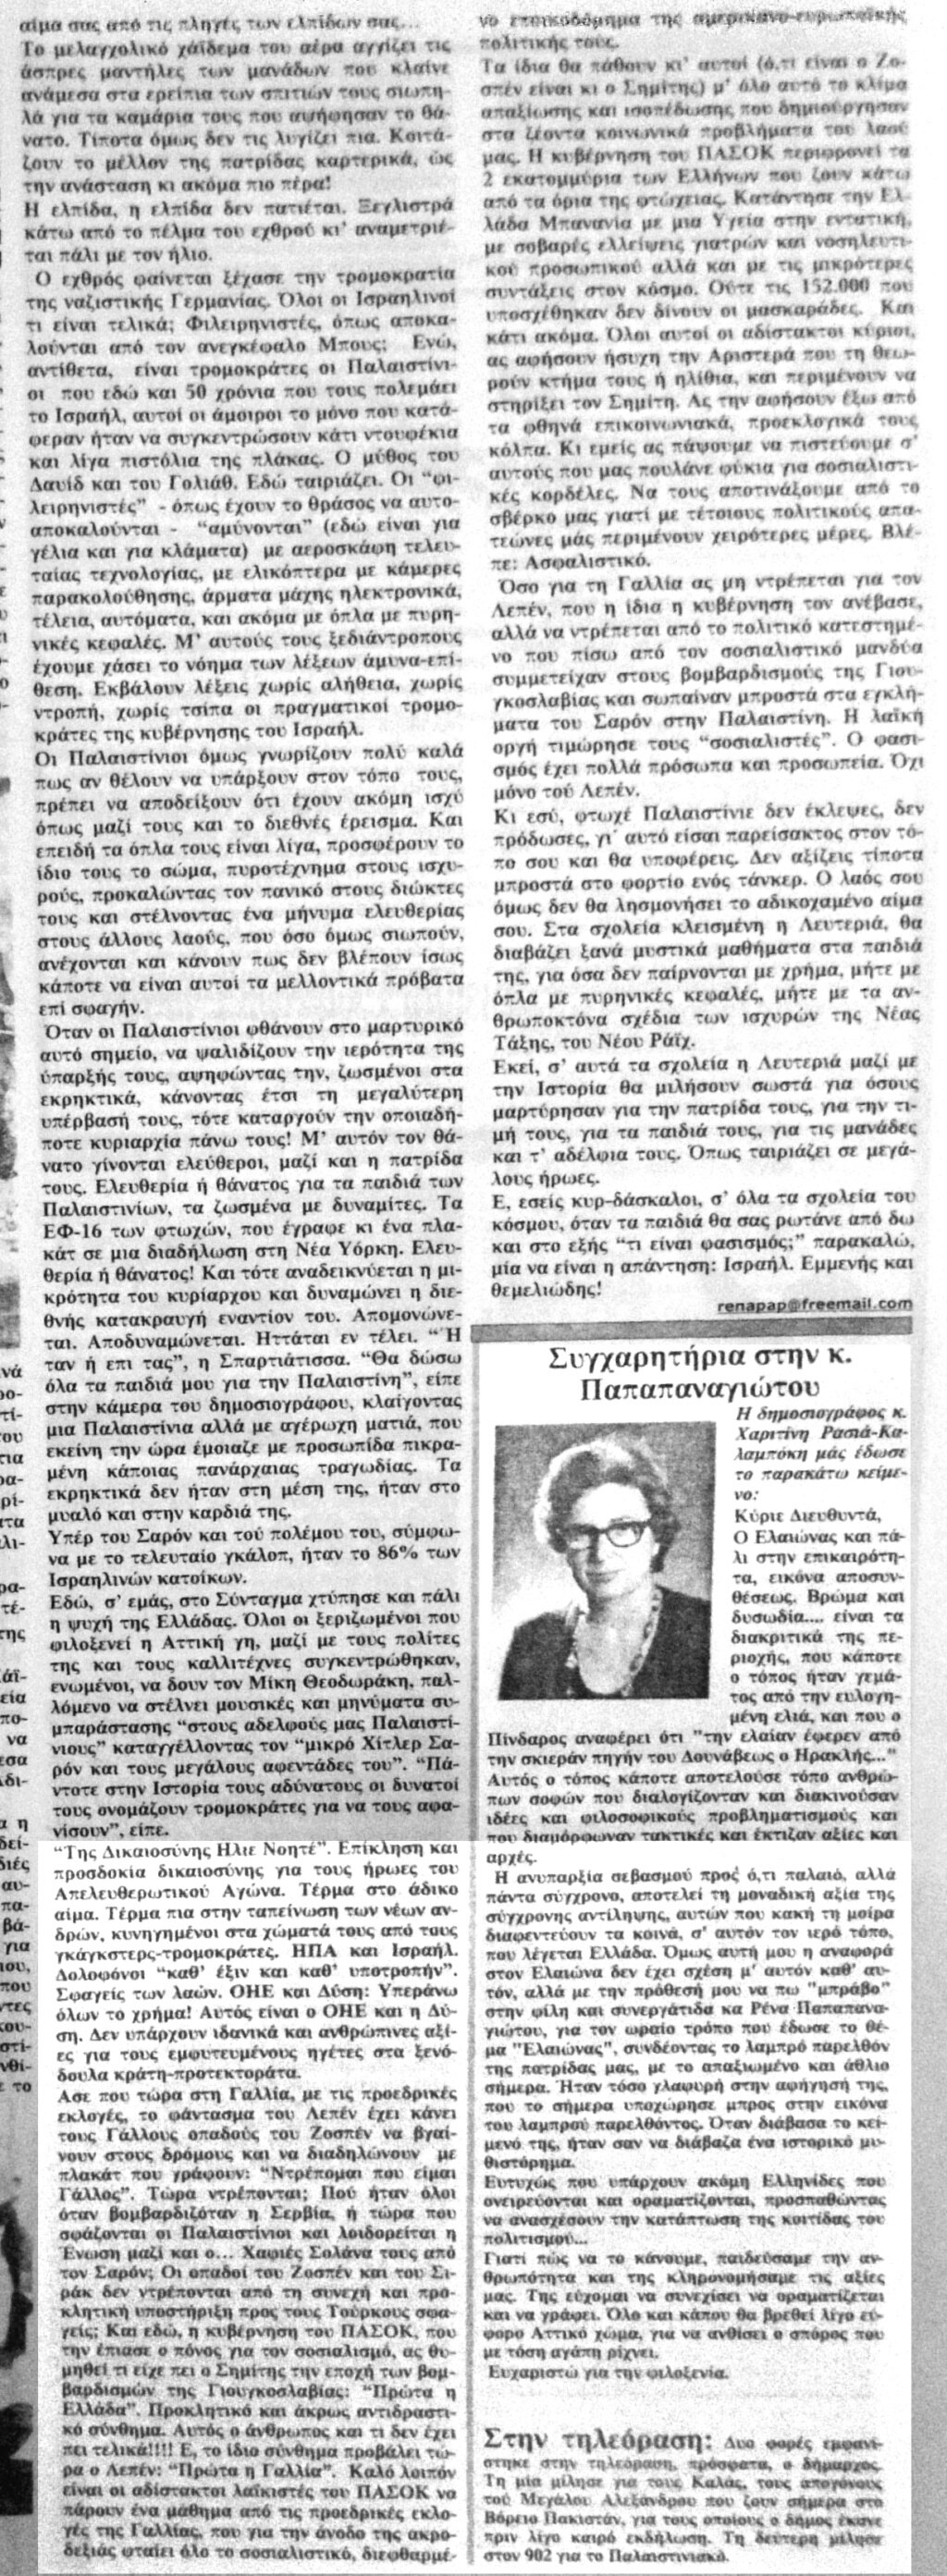 ΠΑΛΑΙΣΤΙΝΗ - ΚΡΑΝΙΟΥ ΤΟΠΟΣ - τής δημοσιογράφου Ρένας Παπαπαναγιώτου - Φύλλο 195 - Μάιος 2002 Eei_ei14